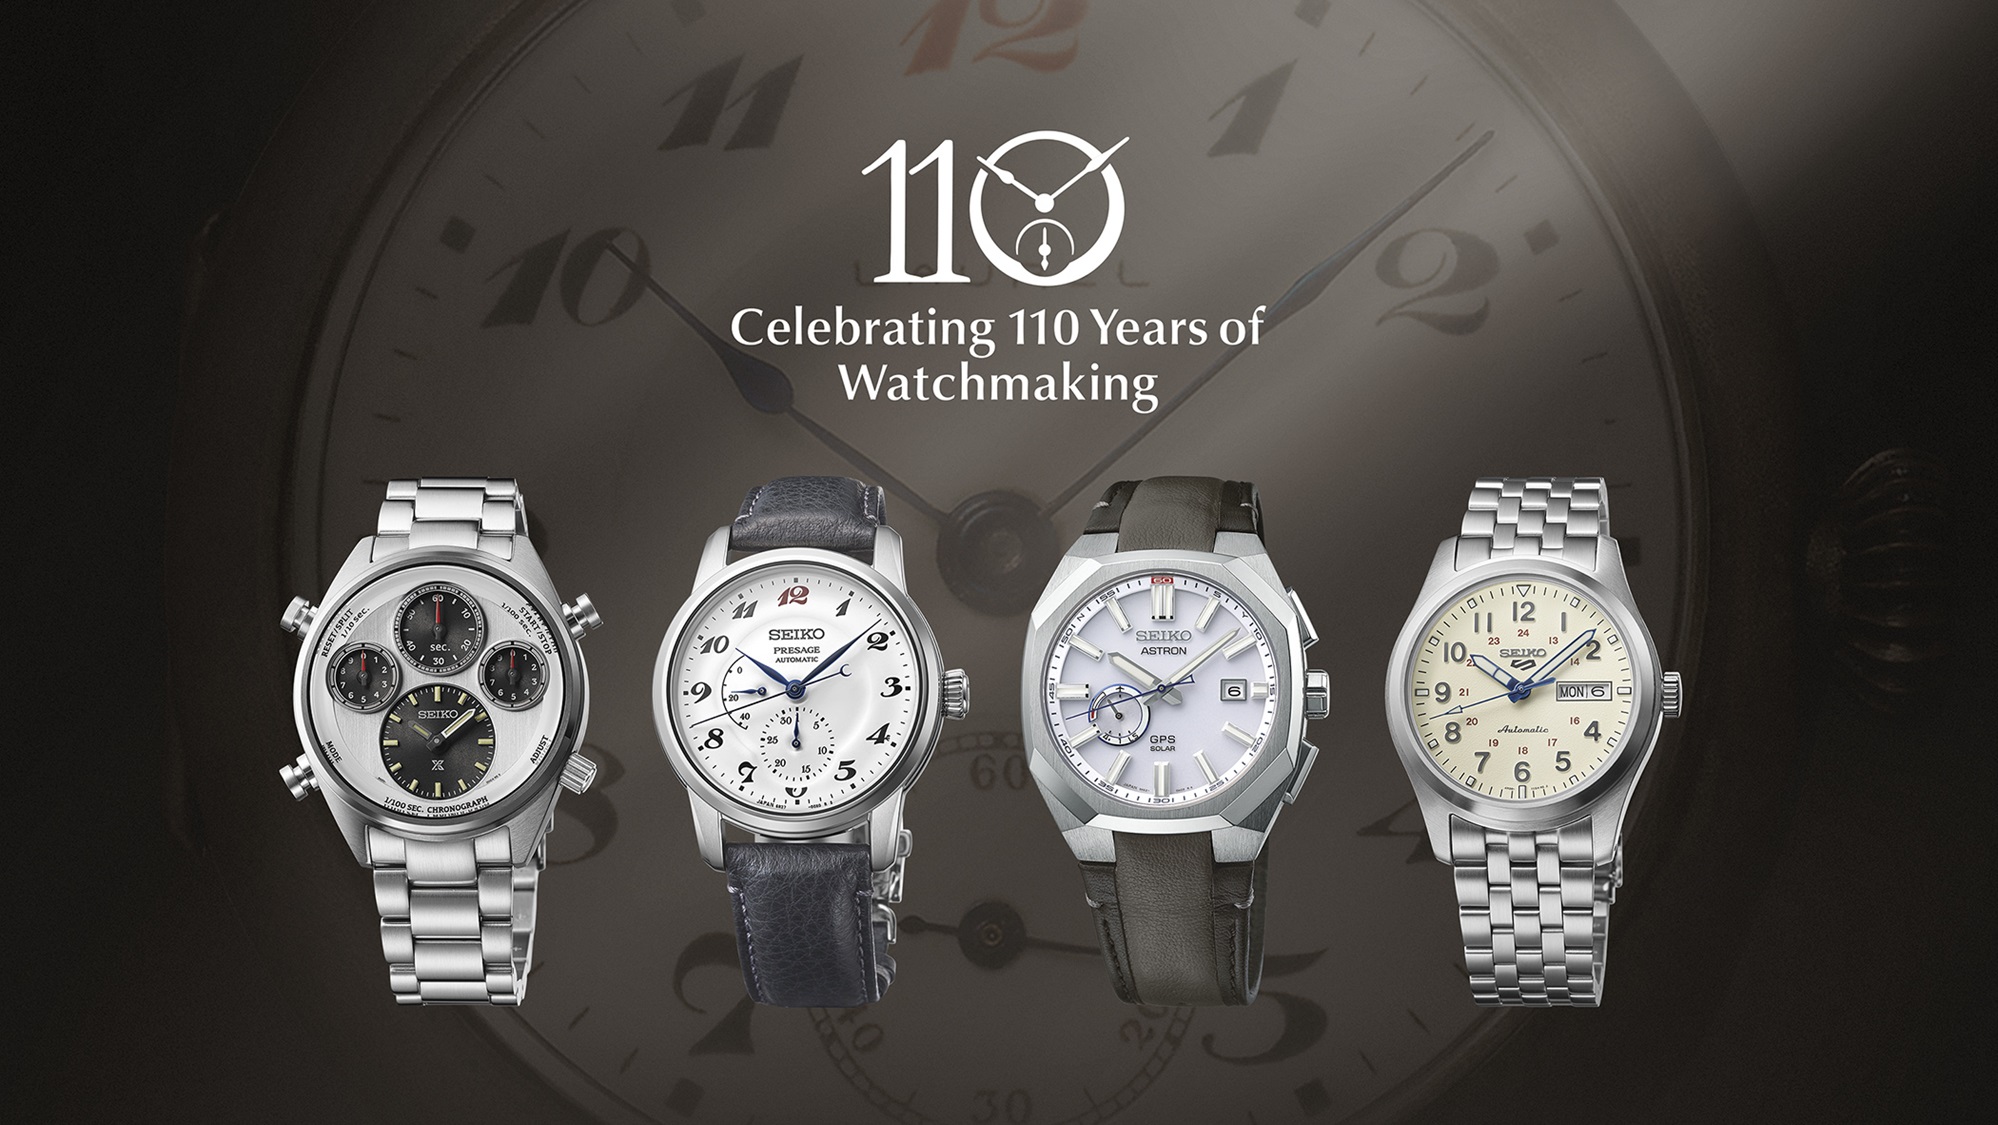 Criações Seiko Prospex, Presage, Astron e 5 Sports comemoram os 110 anos do Laurel, o primeiro relógio de pulso da Seiko e do Japão.